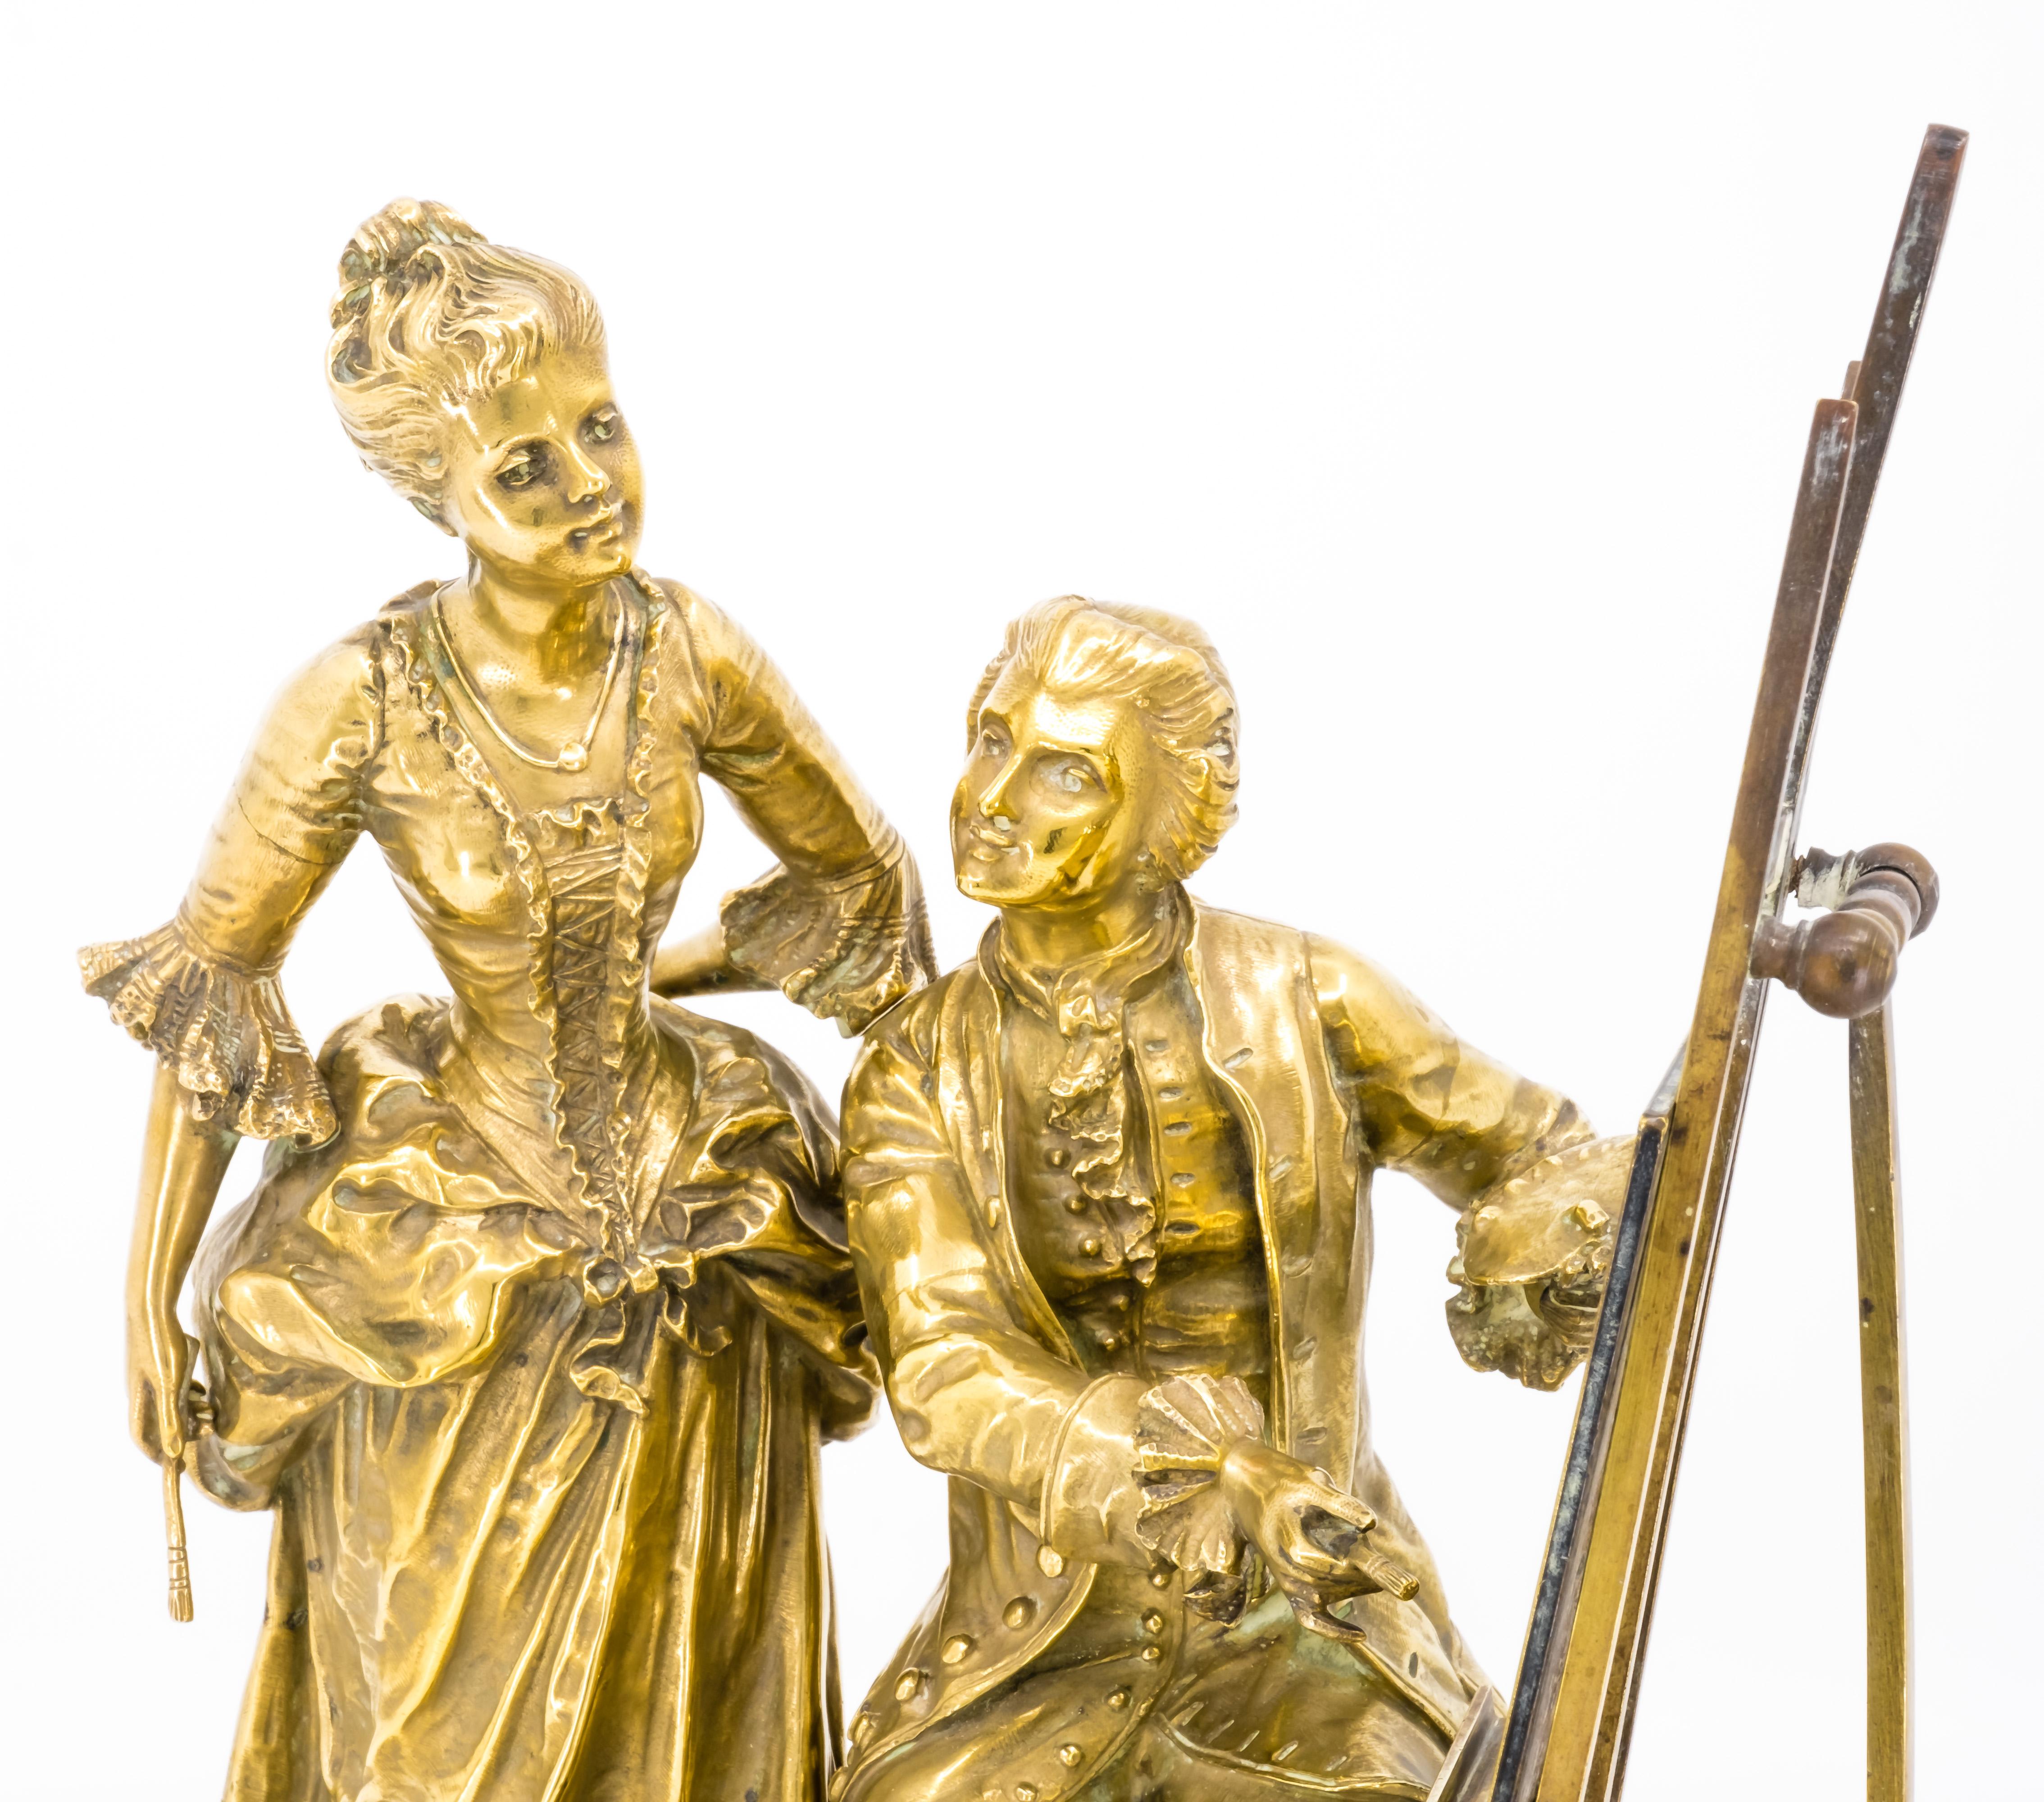 Französische Bronzegruppe des späten 19. Jahrhunderts mit einem Maler an seiner Staffelei und einer weiblichen Figur an seiner Seite.
Das Stück ist in gutem Zustand und hat eine schöne Patina.



Inklusive Versand 
Kostenlose und schnelle